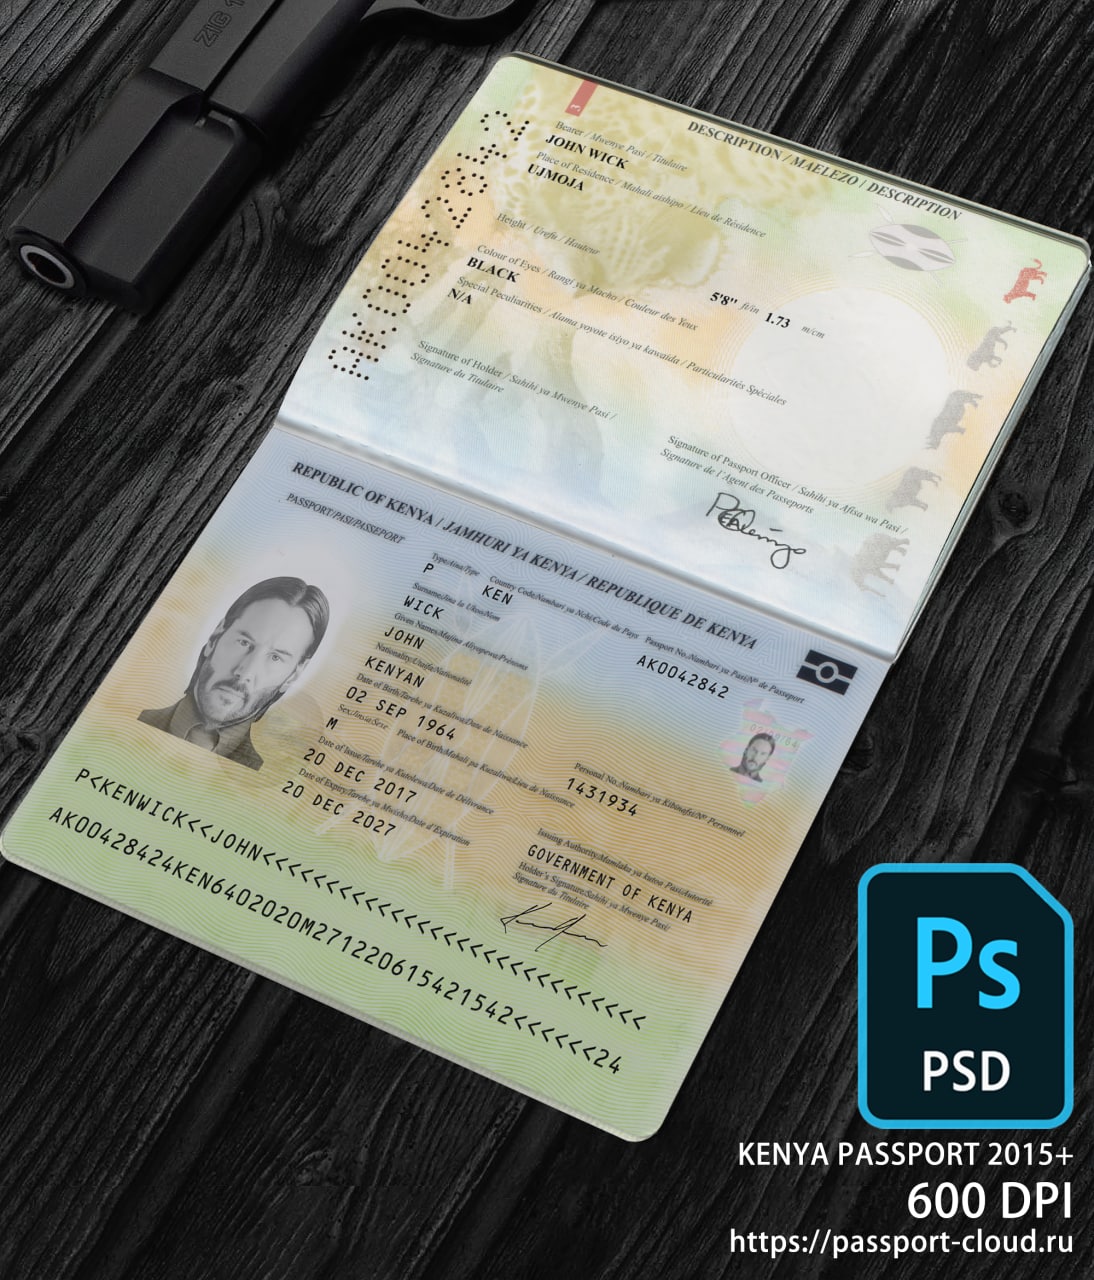 Kenya Passport 2015+ PSD1